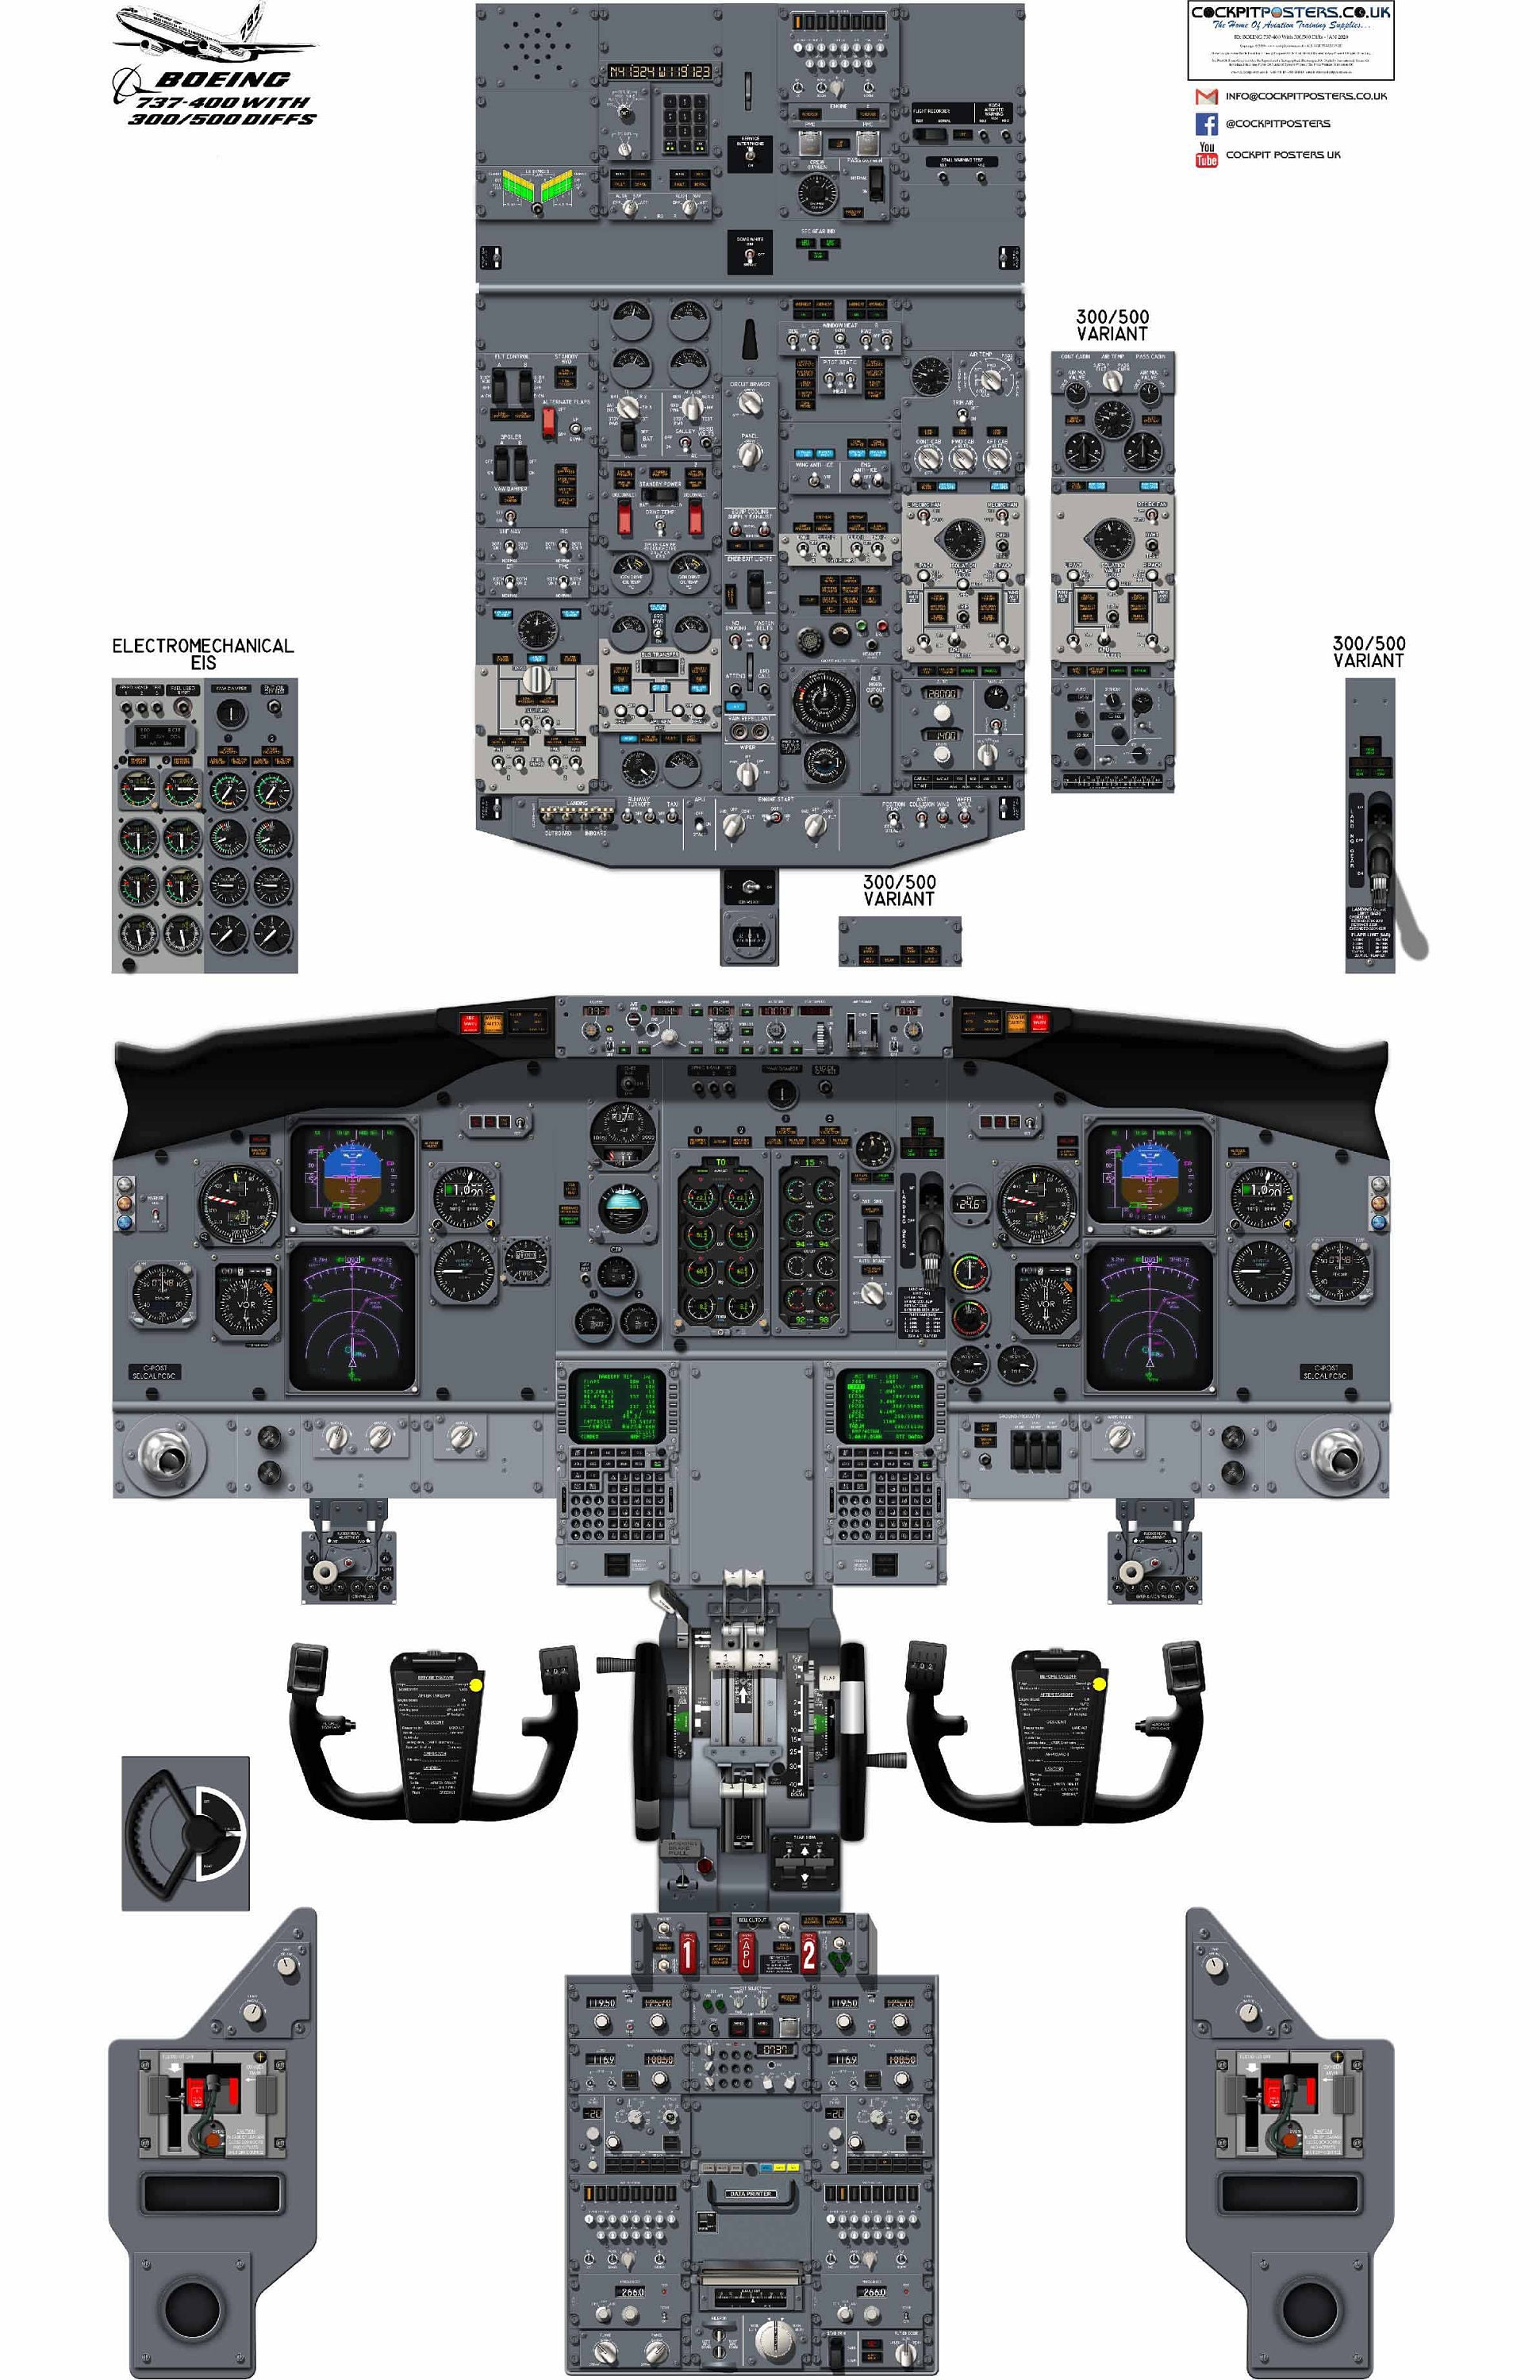 clipart boeing 737 cockpit